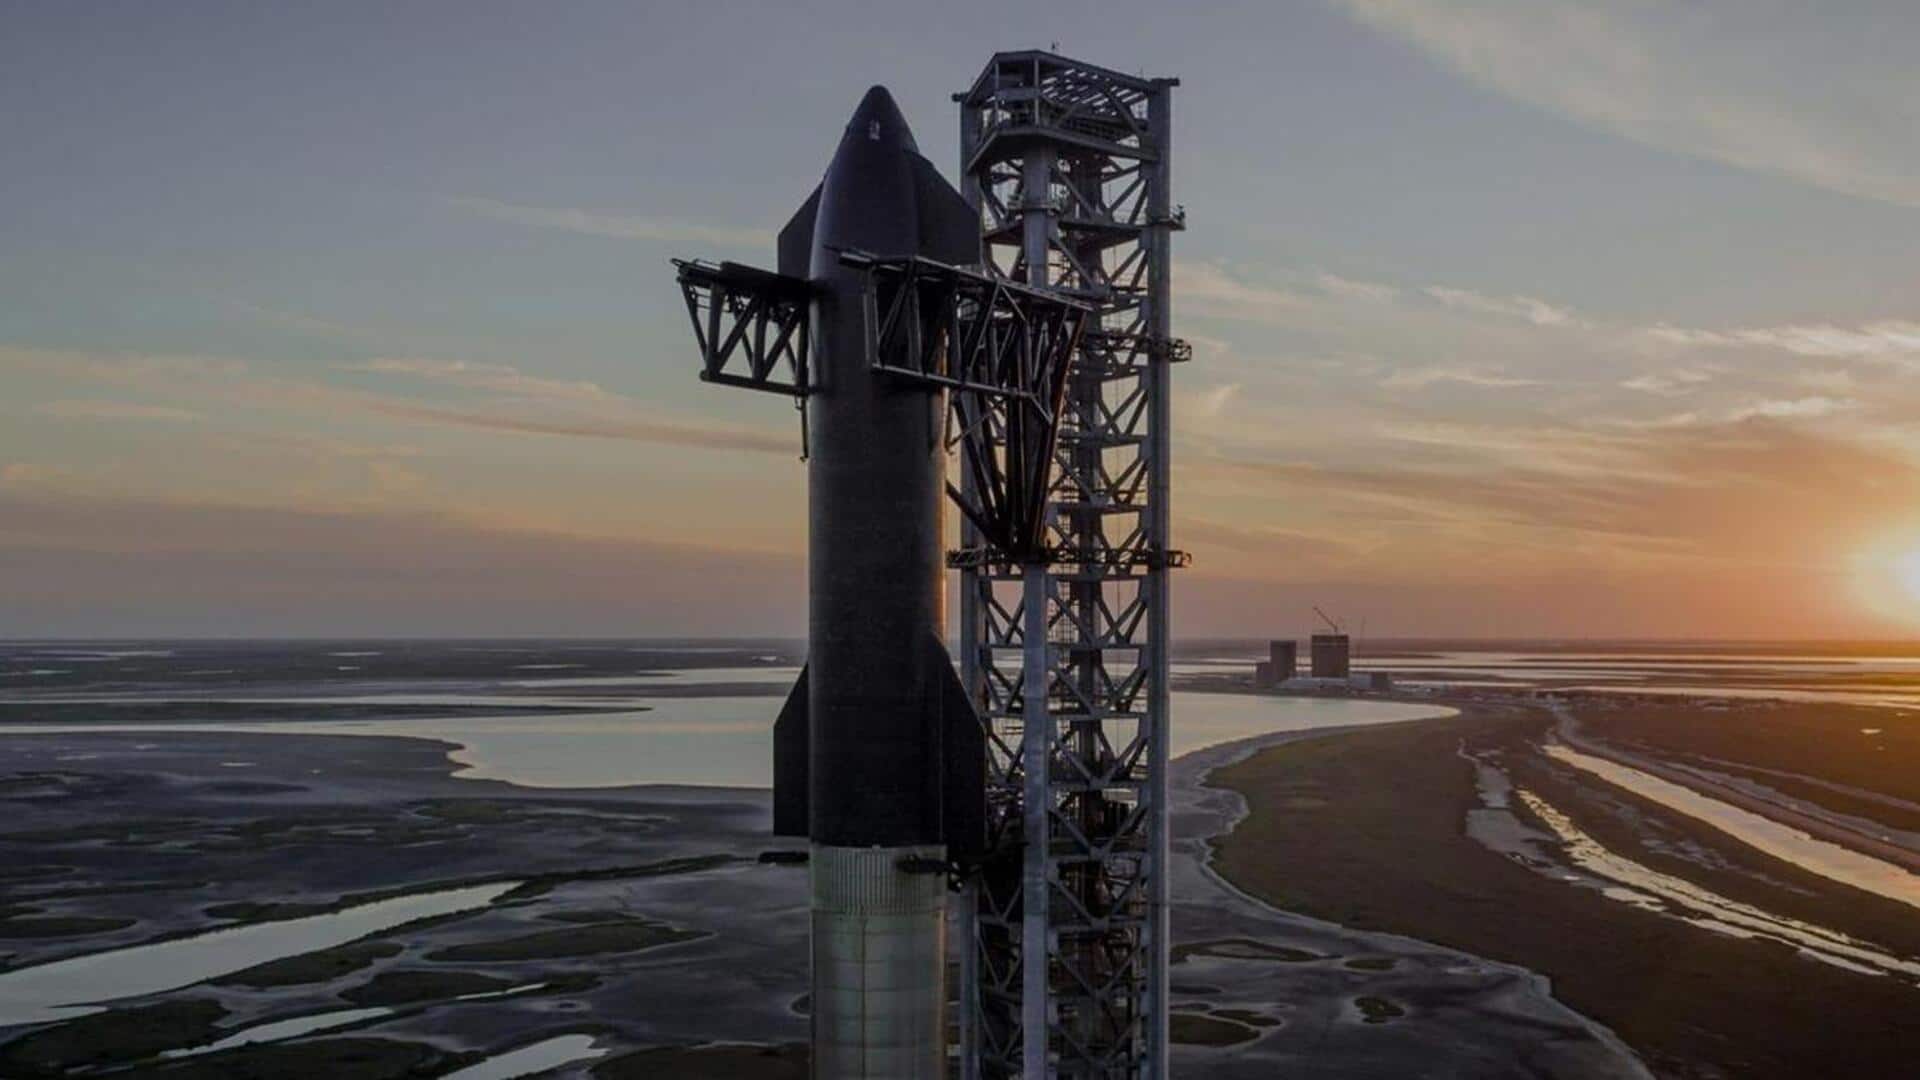 स्पेस-X हर साल लॉन्च करना चाहती है 120 स्टारशिप, अन्य कंपनियां कर रहीं विरोध